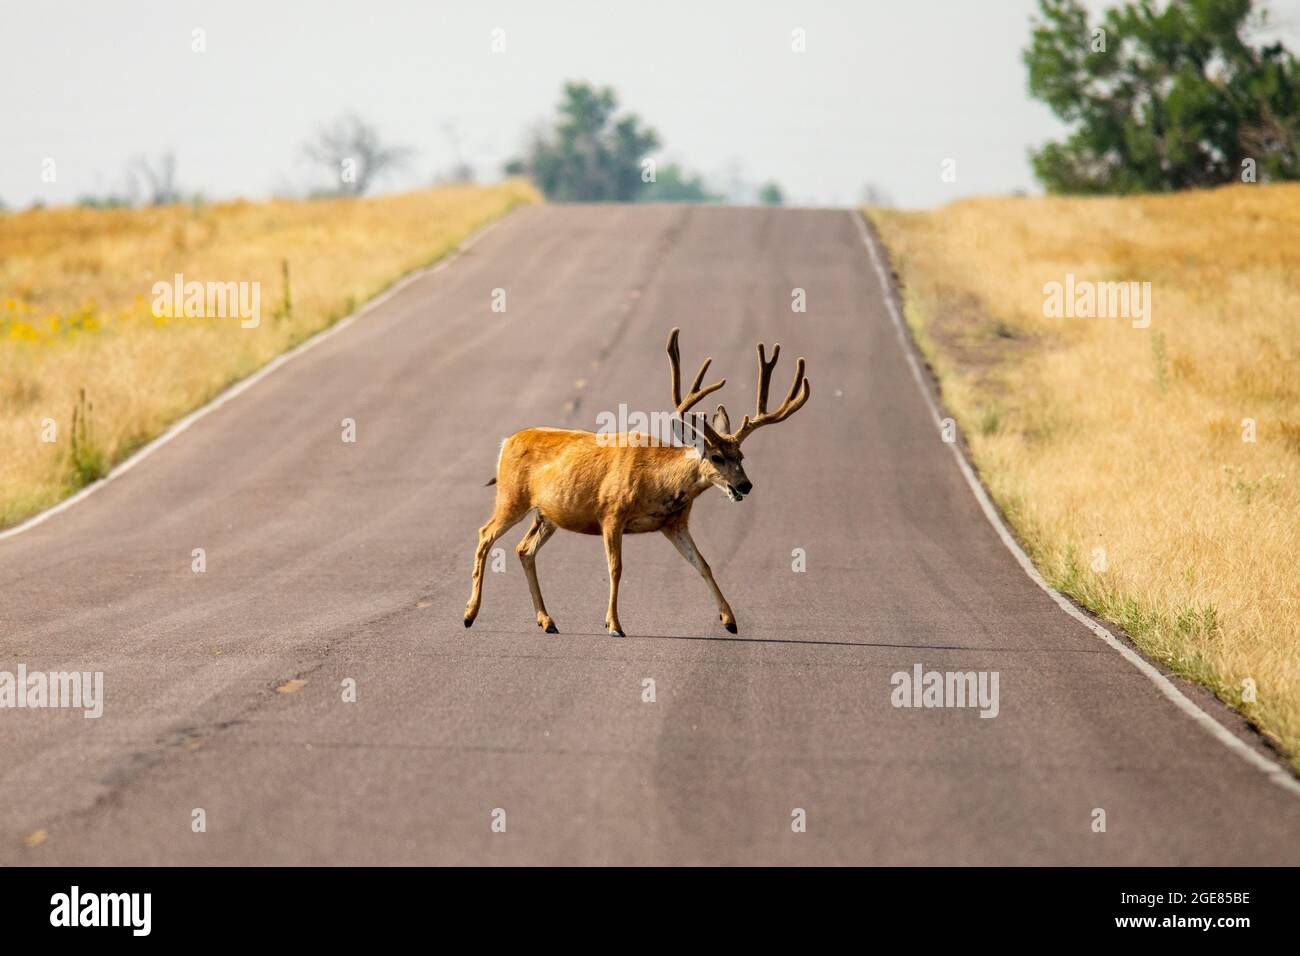 Route de passage en buck du cerf mulet (Odocoileus hemionus) dans la réserve naturelle nationale Rocky Mountain Arsenal, Commerce City, près de Denver, Colorado Banque D'Images